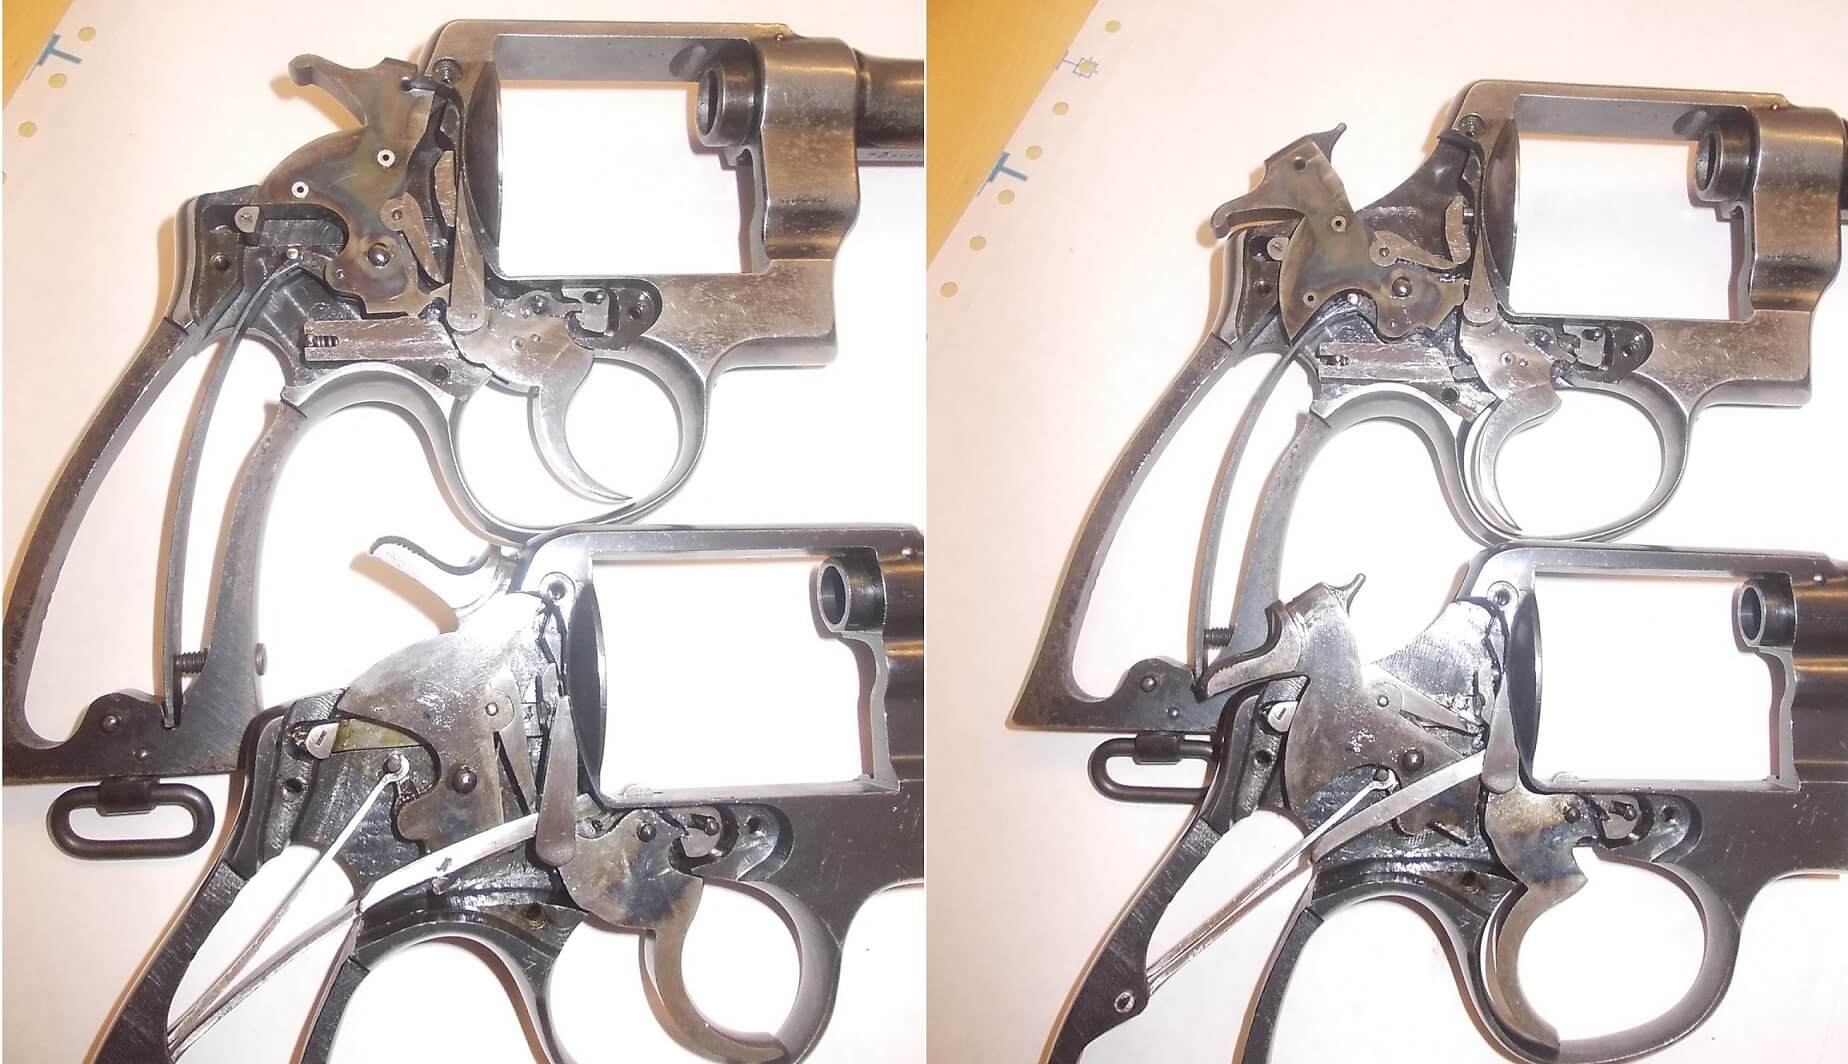 Différences entre le mécanisme d'un Smith & Wesson Military & Police (en haut) et un 92 espagnol (Trocaola Aranzabal Y Cia) (en bas)